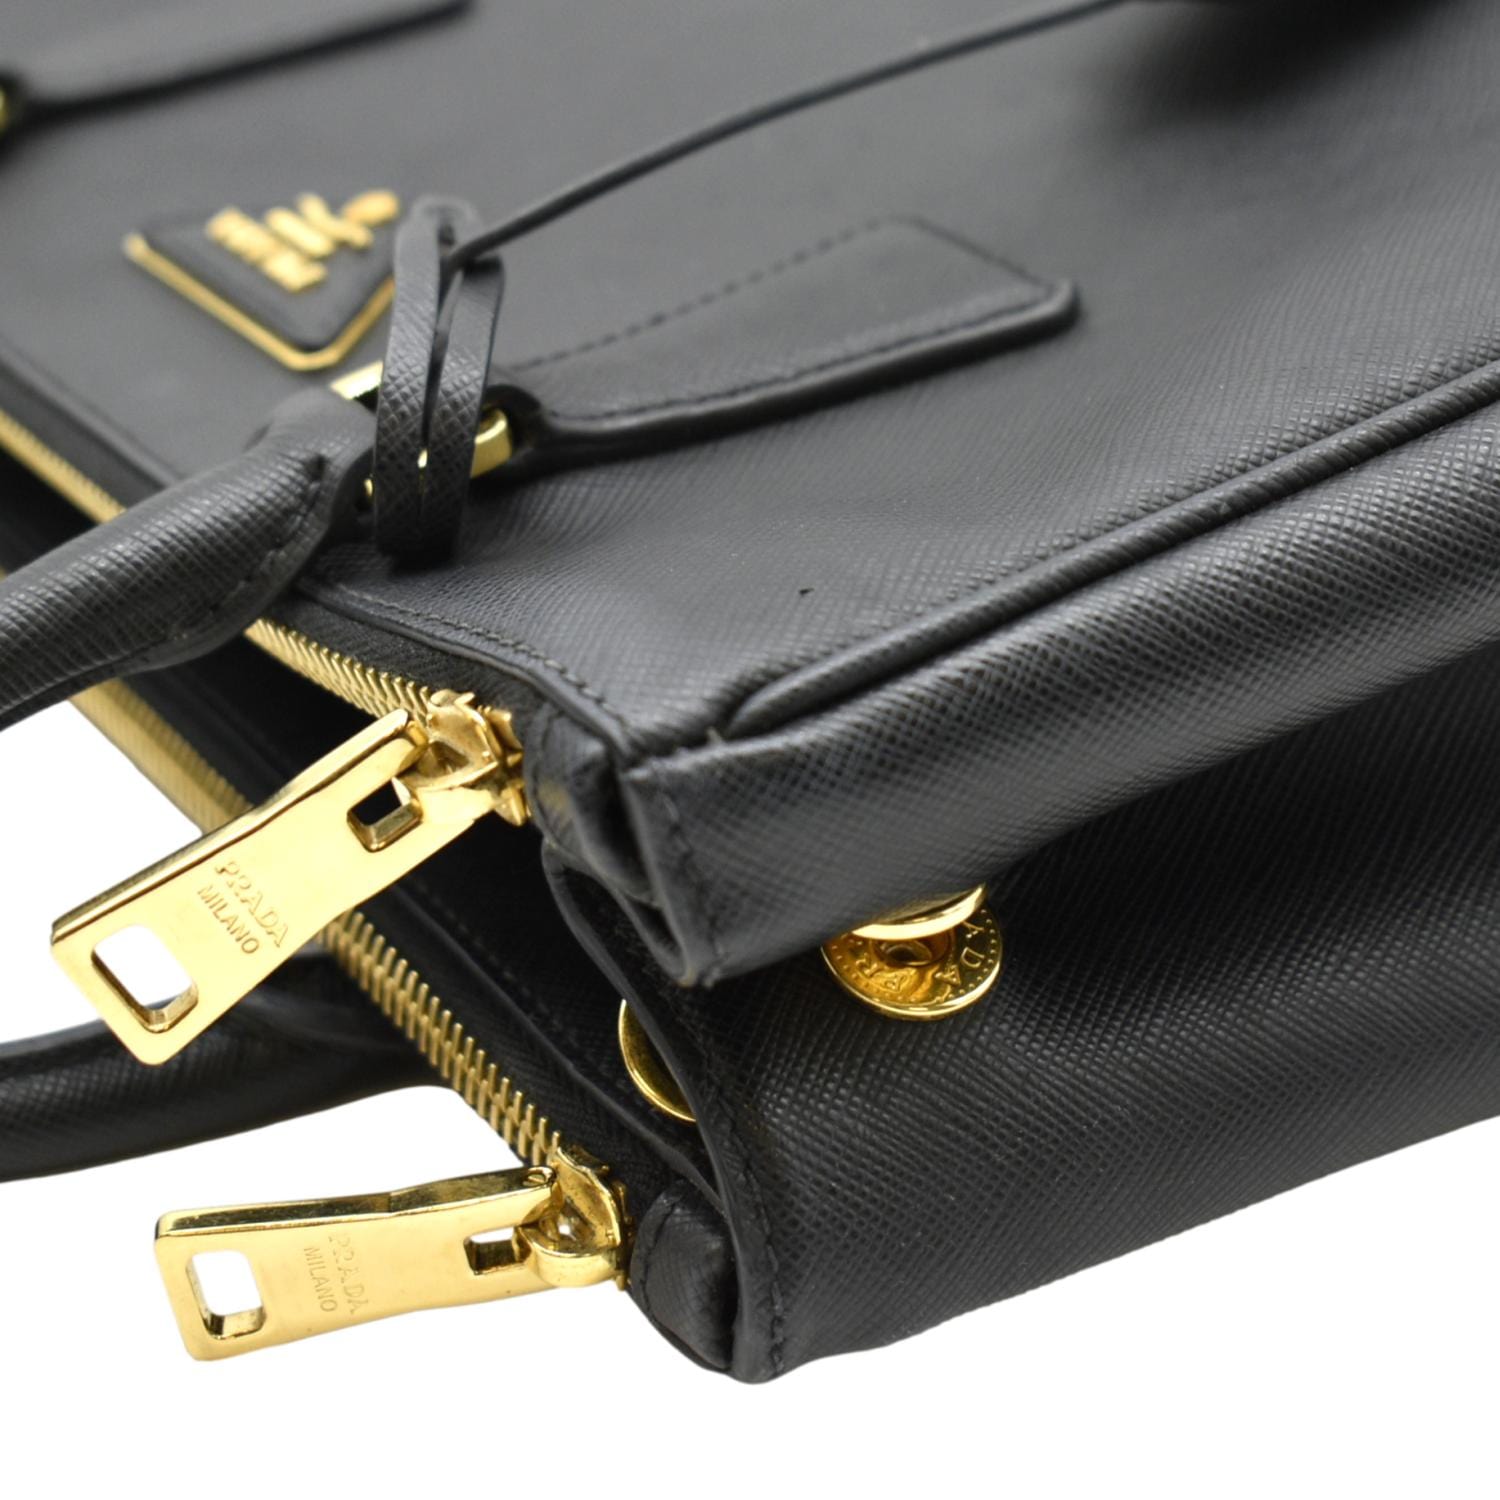 Prada Galleria Small Saffiano Double-Zip Tote Bag